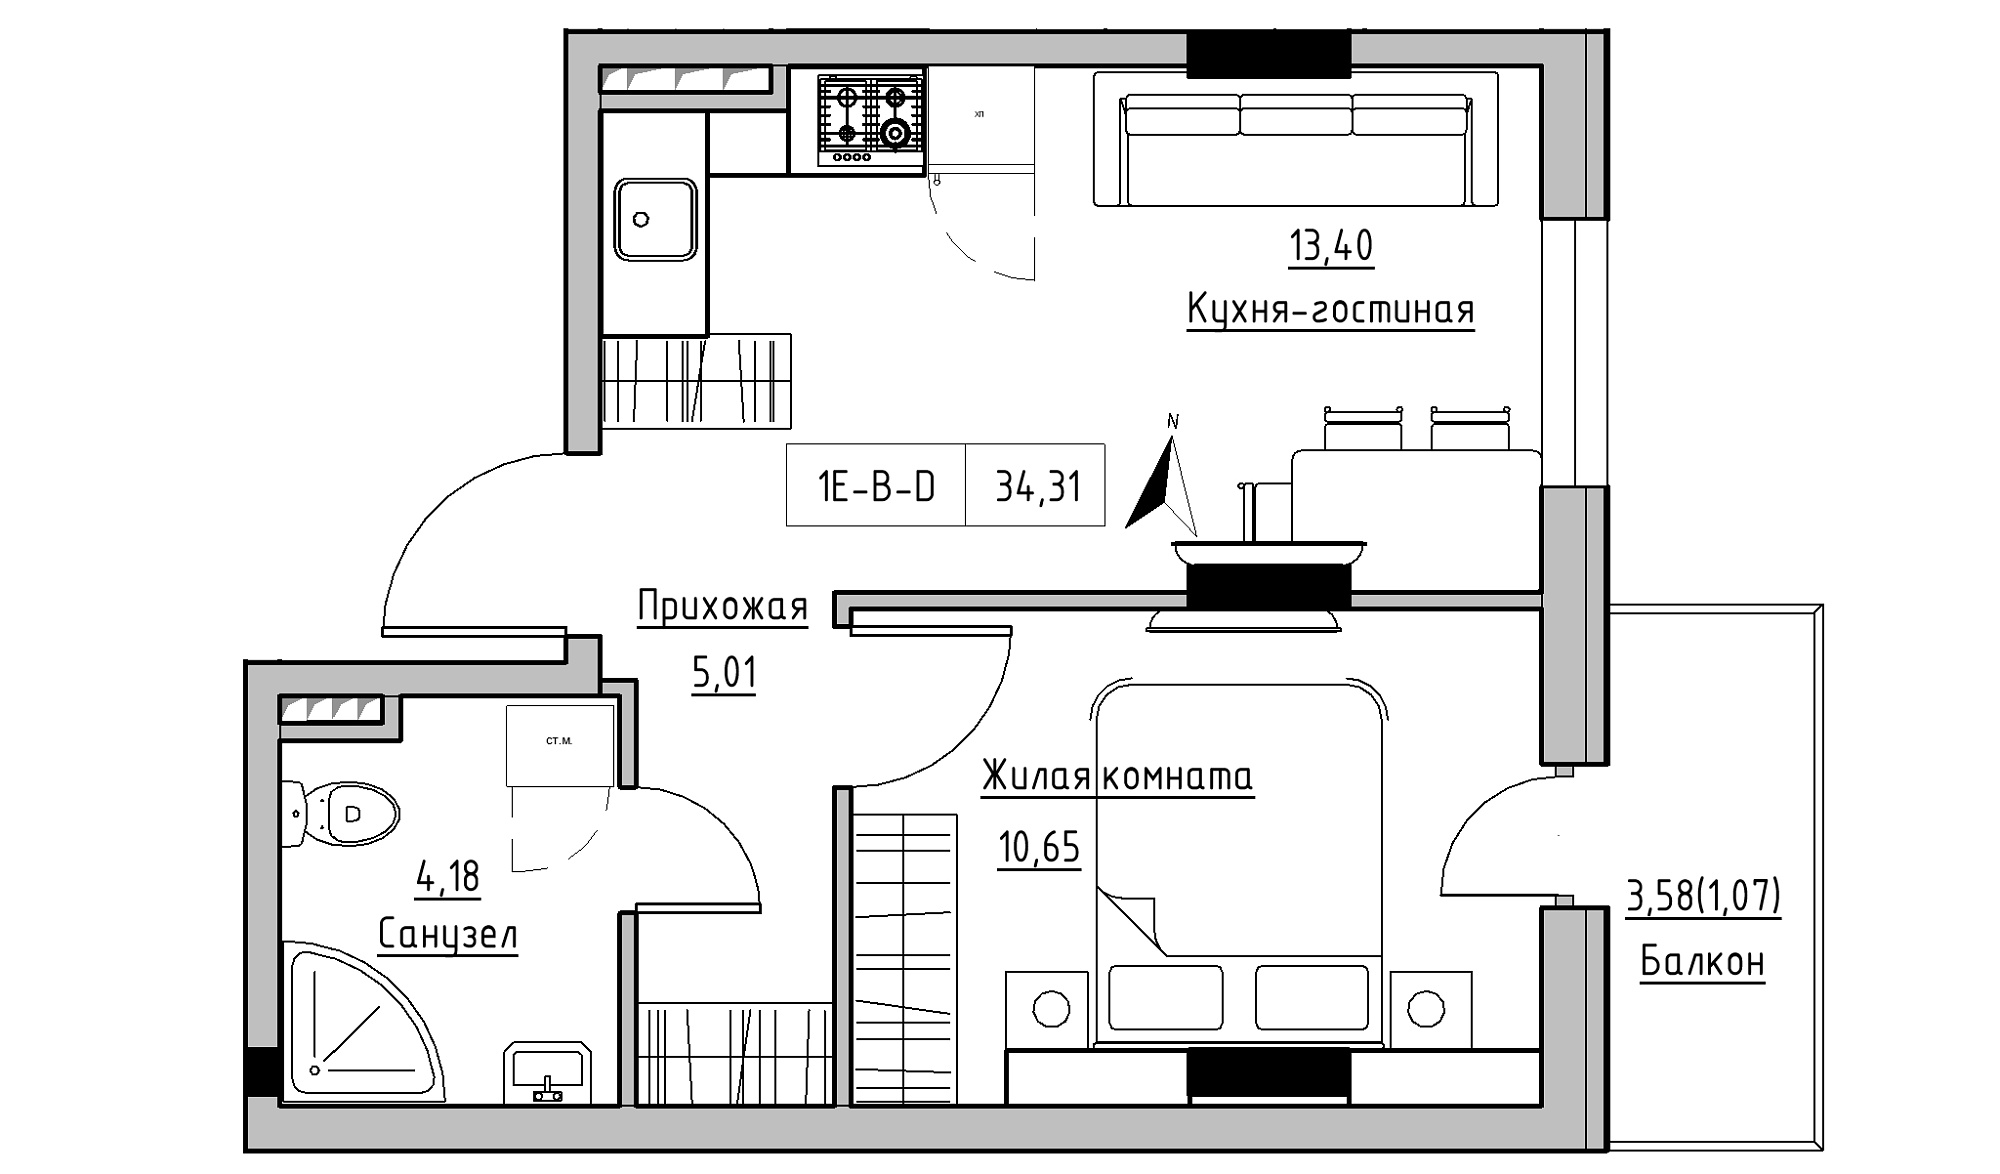 Планировка 1-к квартира площей 34.31м2, KS-025-03/0002.